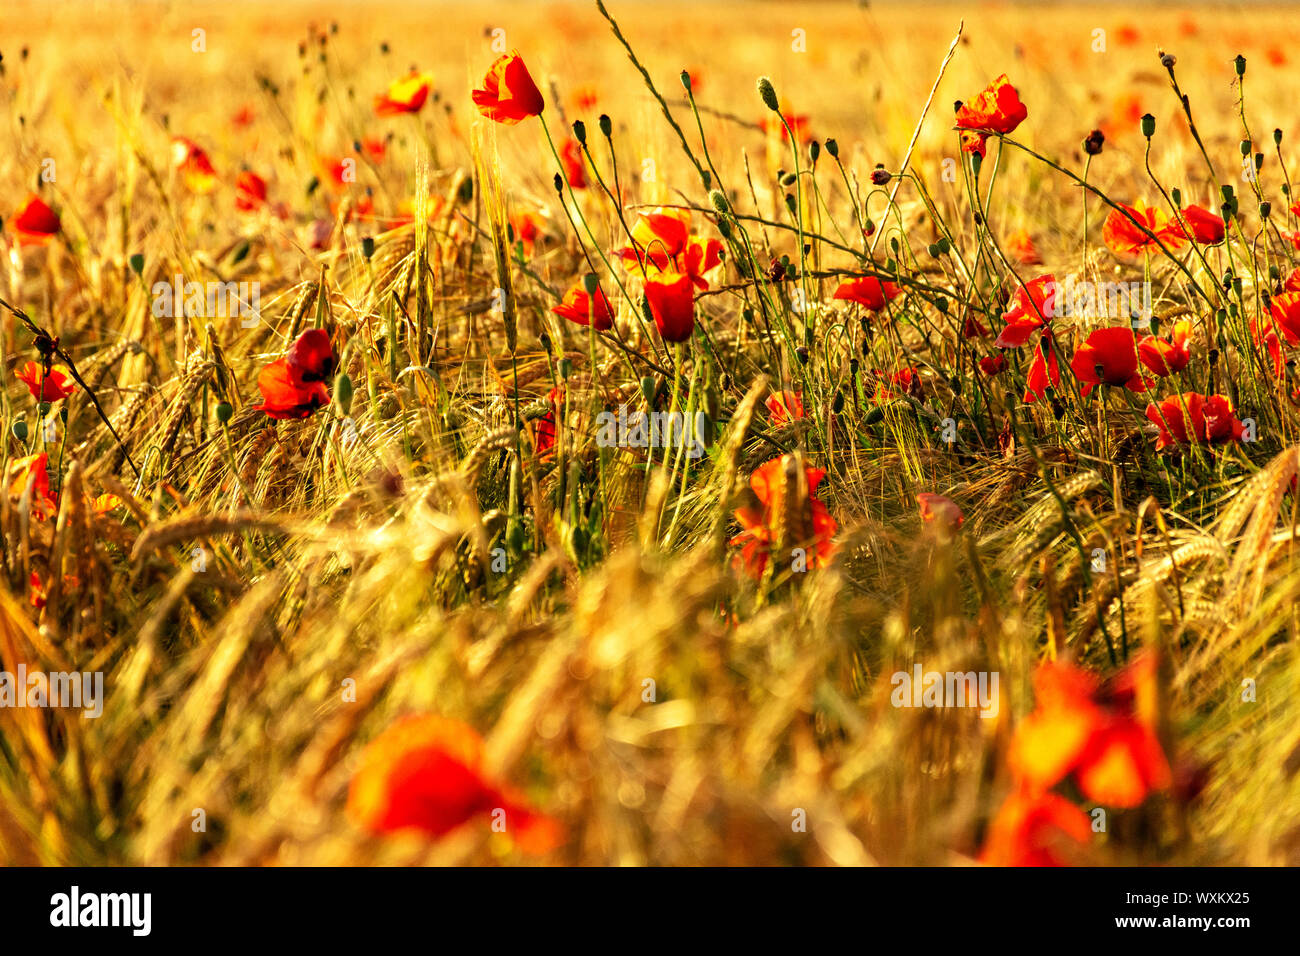 Roter Mohn, Mohn, in einem Weizenfeld bei Sonnenuntergang. Spikes von Weizen vergoldet durch die Sonne. Stockfoto